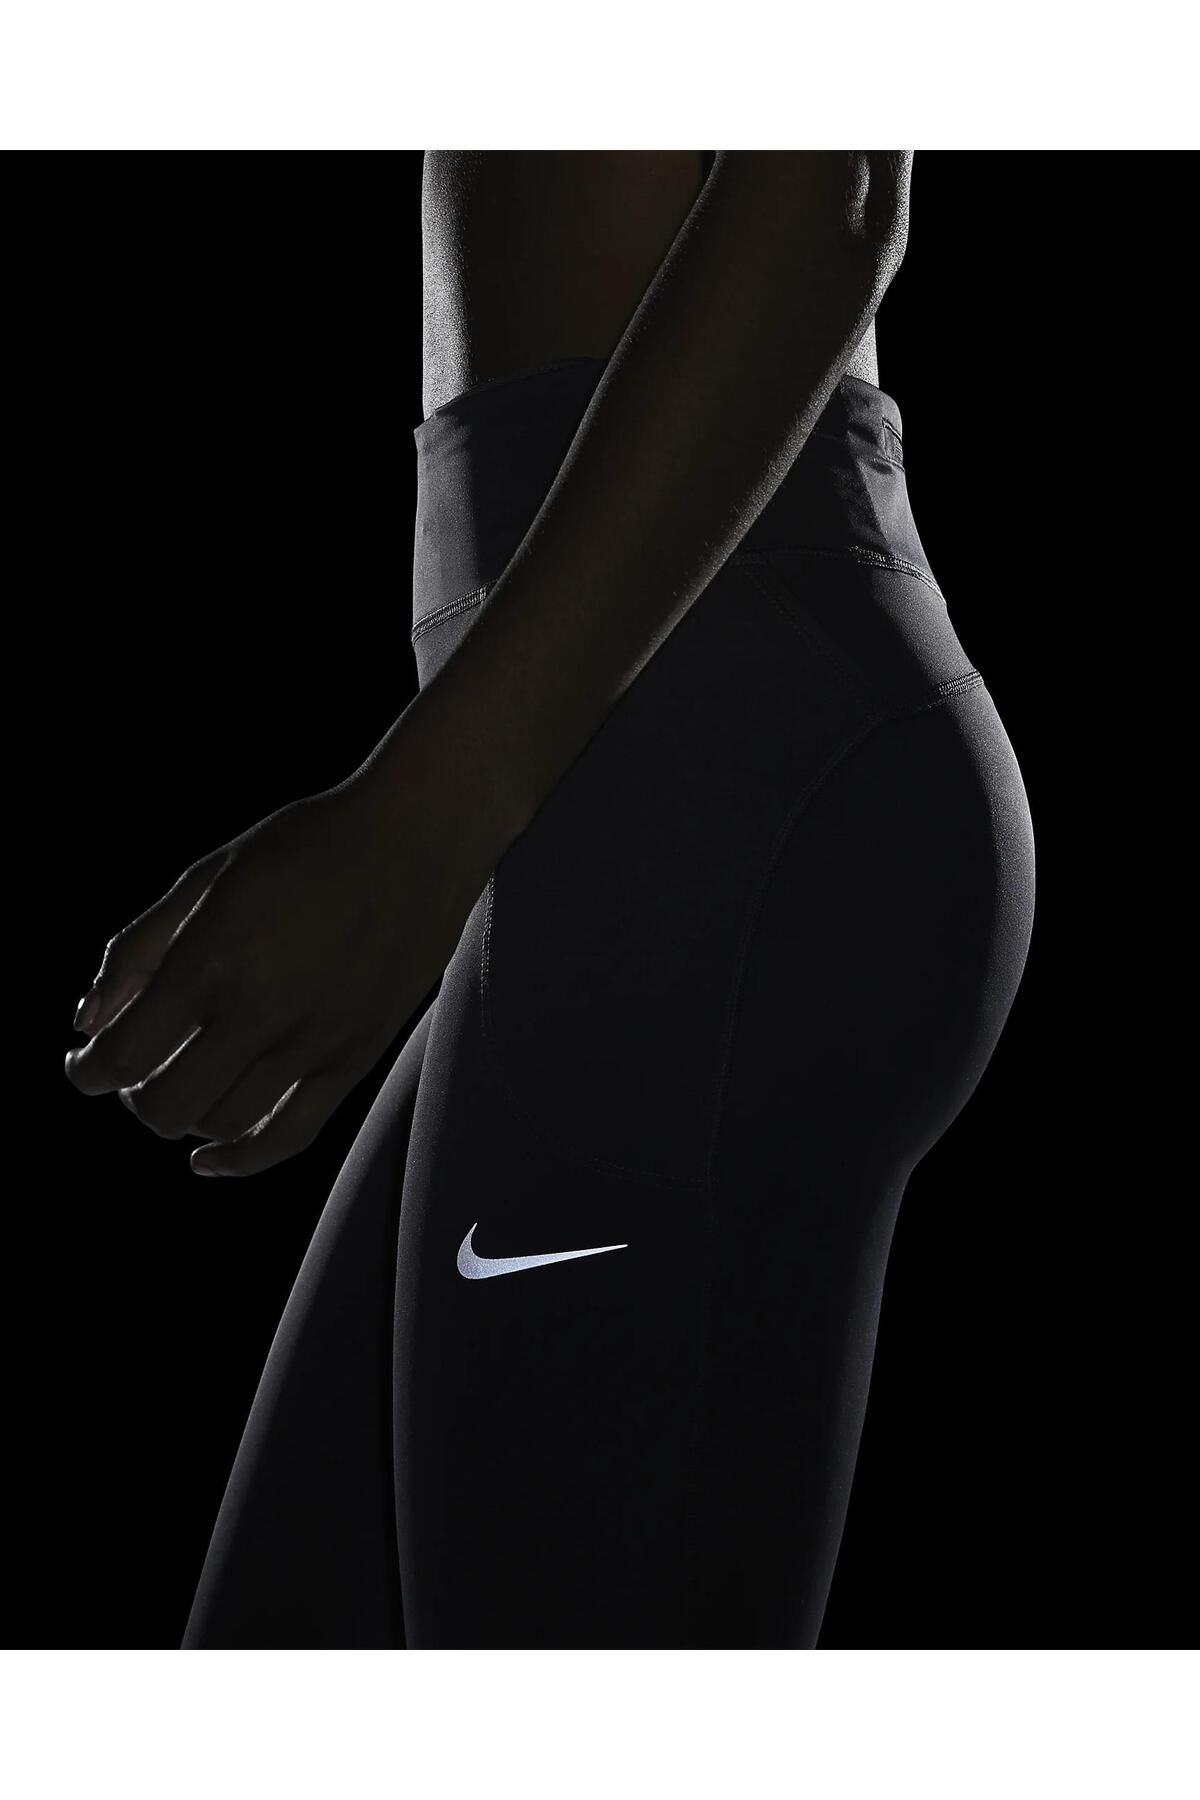 Nike Fast Tght Mr Kadın Tayt At3103-010 Fiyatı, Yorumları - Trendyol